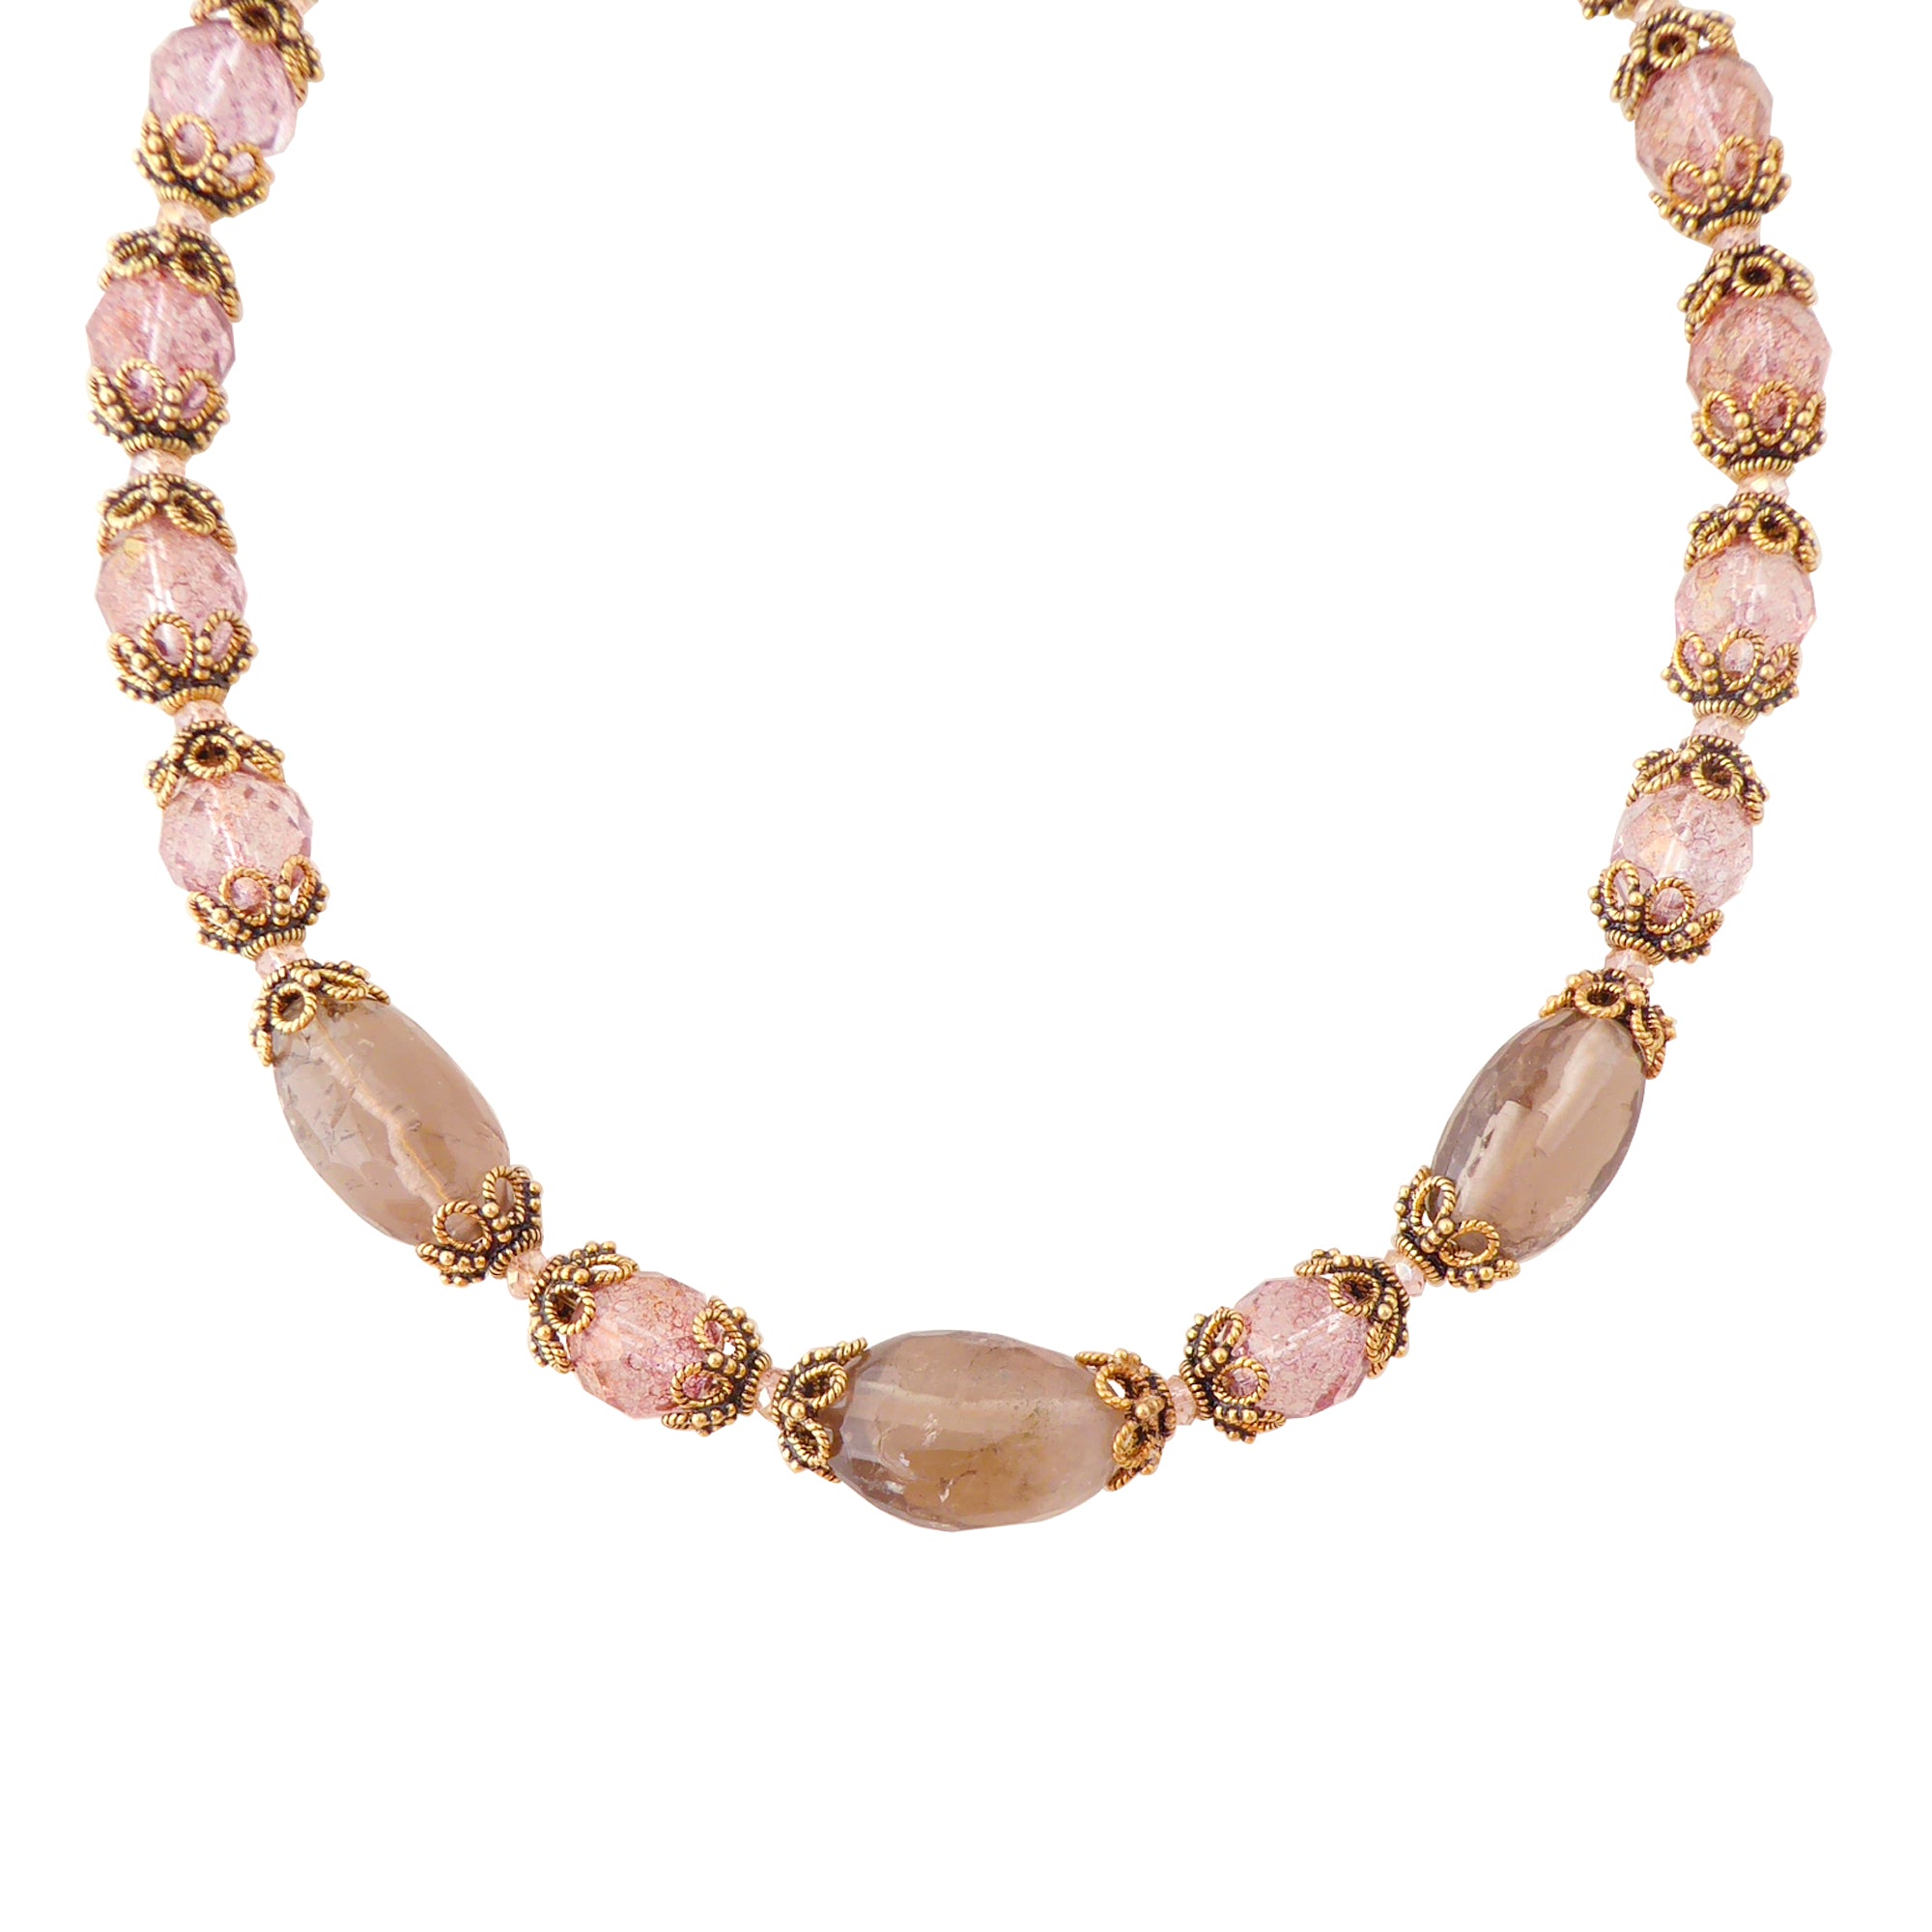 Greige quartz rococo necklace by Jenny Dayco 1